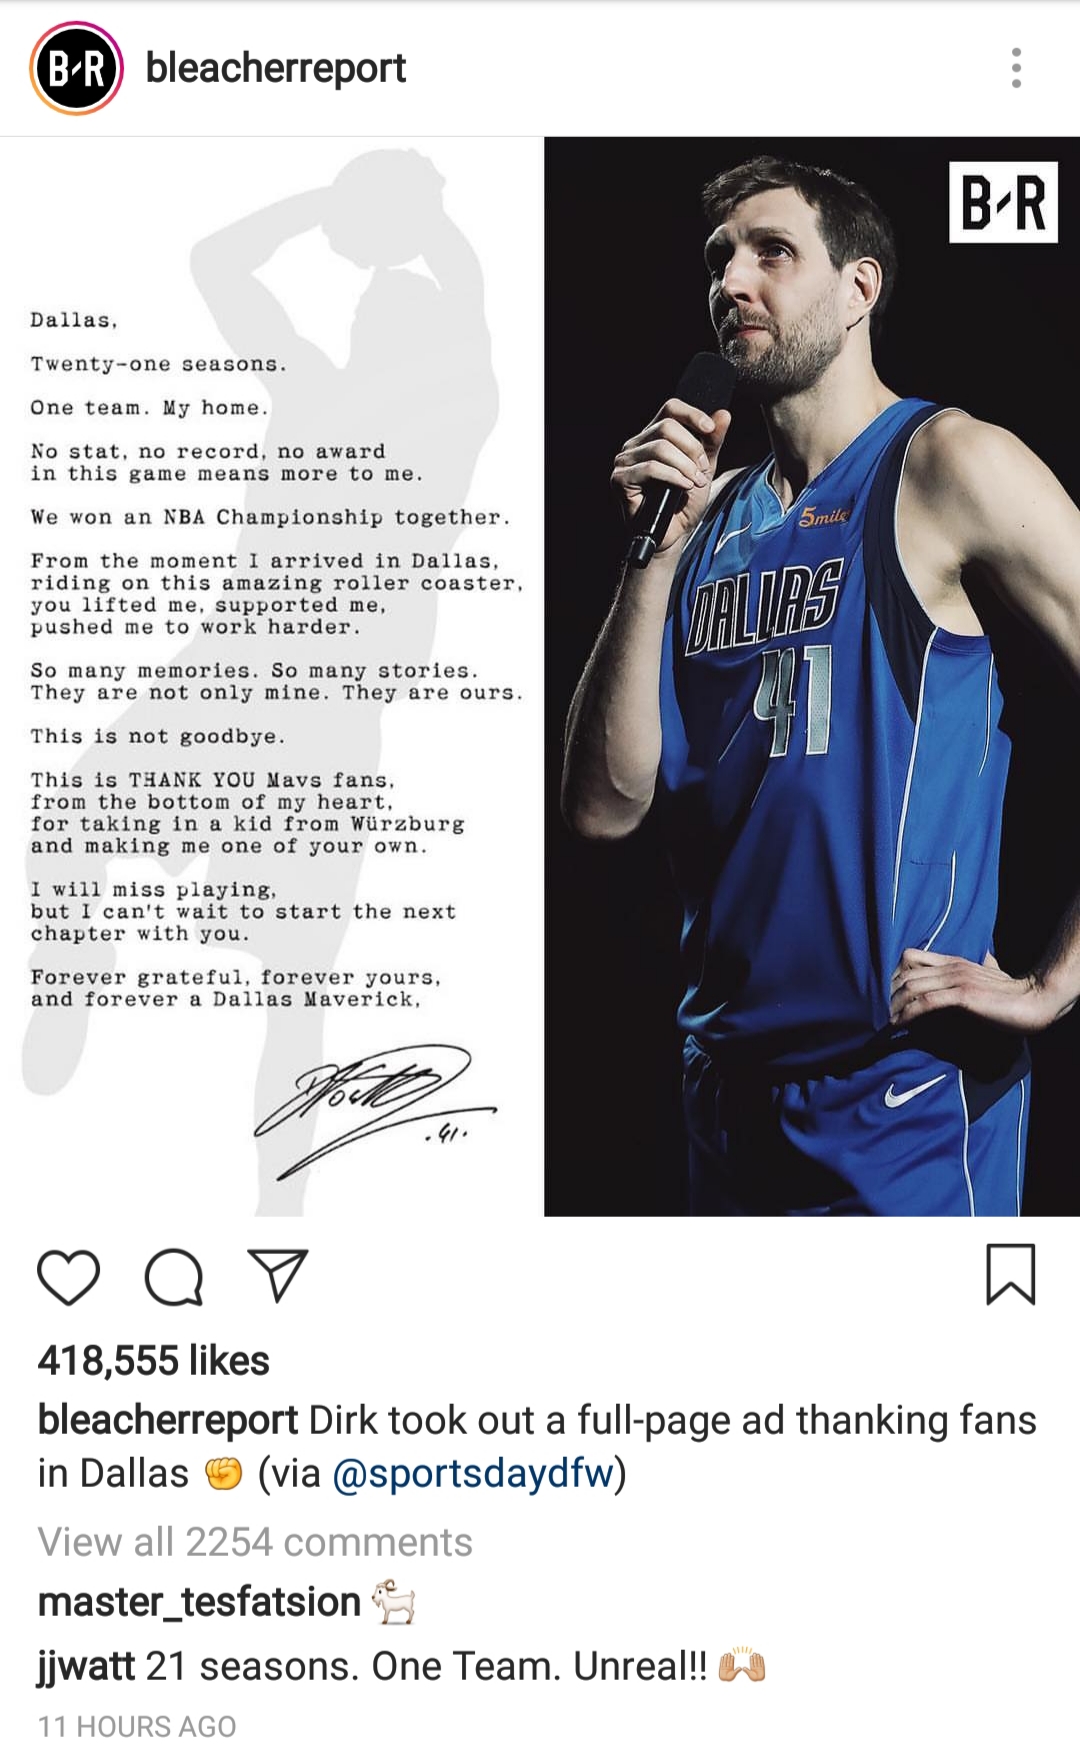 催泪！NBA巨星诺维茨基退役后发亲笔信感谢球迷